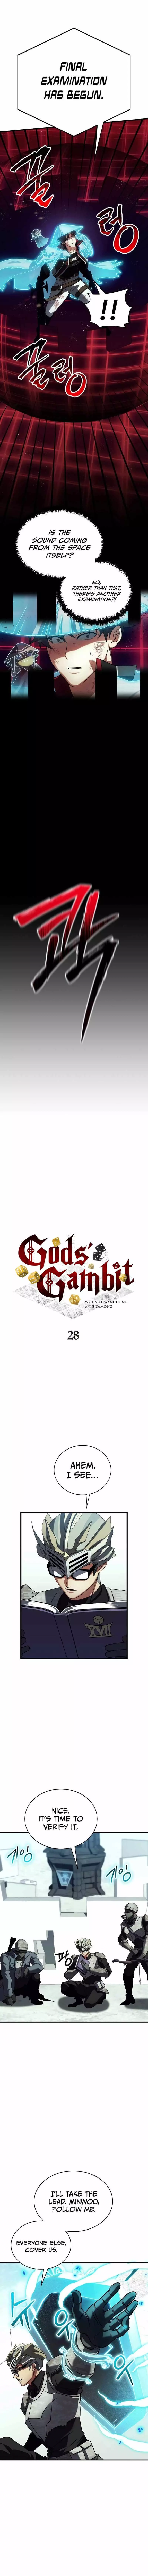 Gods’ Gambit - 28 page 8-6c0d868c